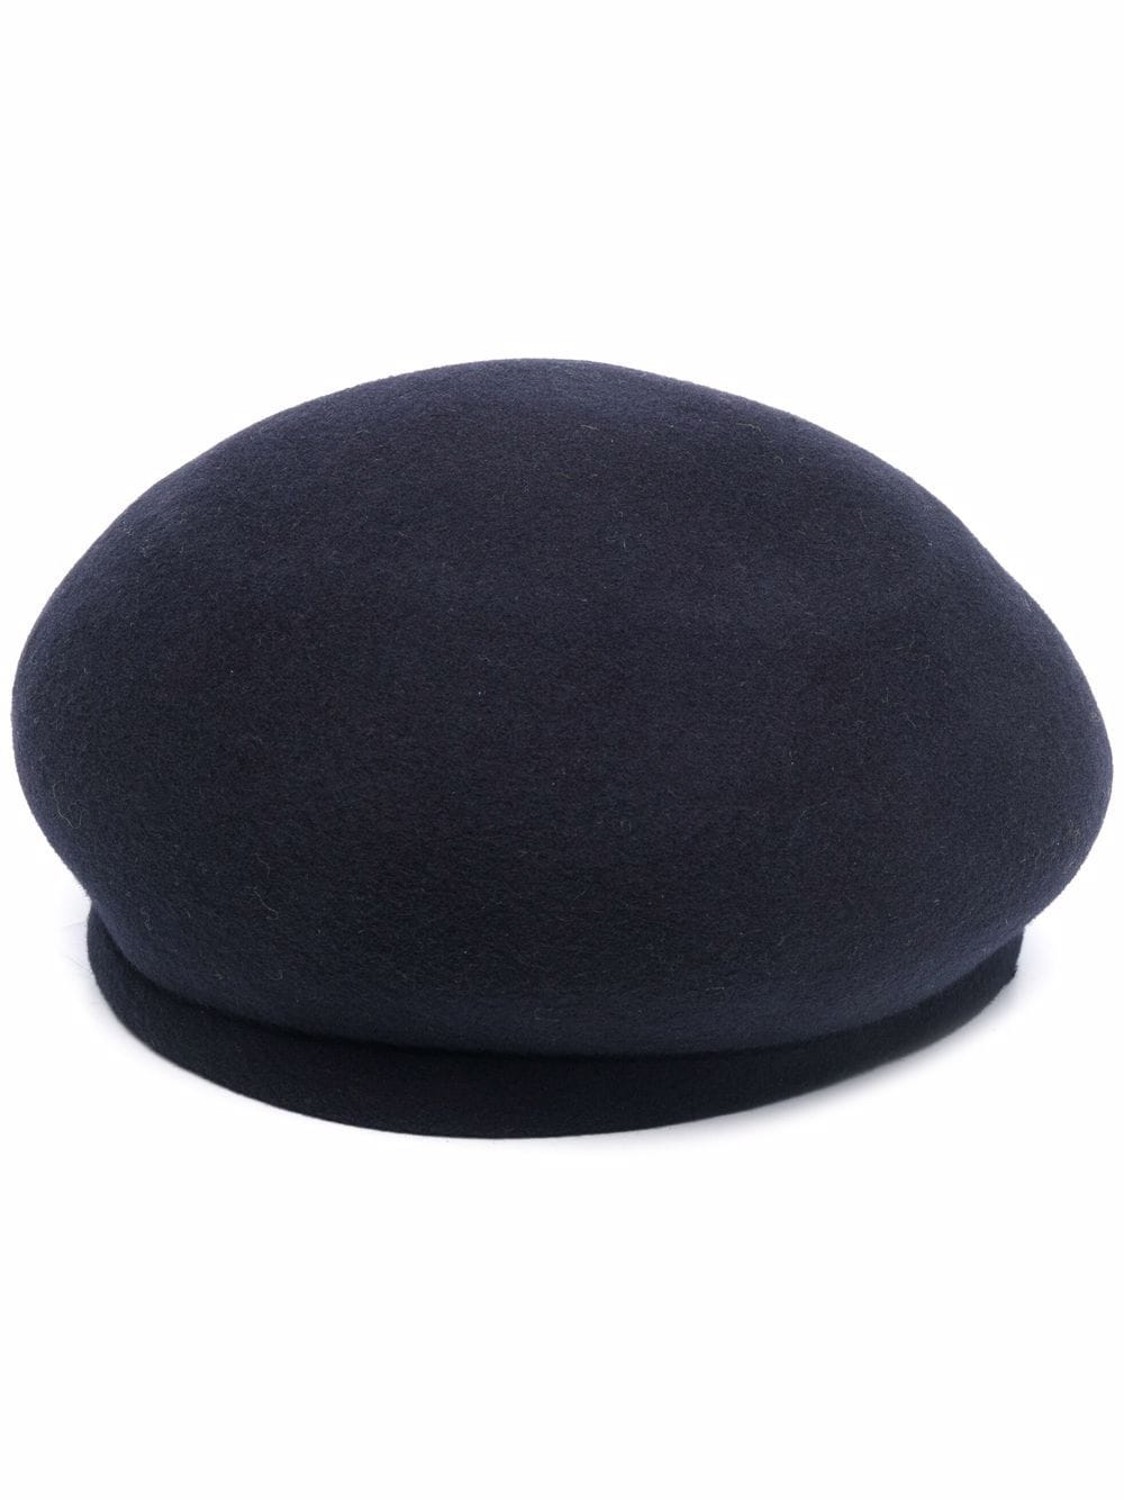 shop Flapper Saldi Accessori: Accessori Flapper, cappello, tipo basco, color nero.


Composizione: 100% lana. number 2281